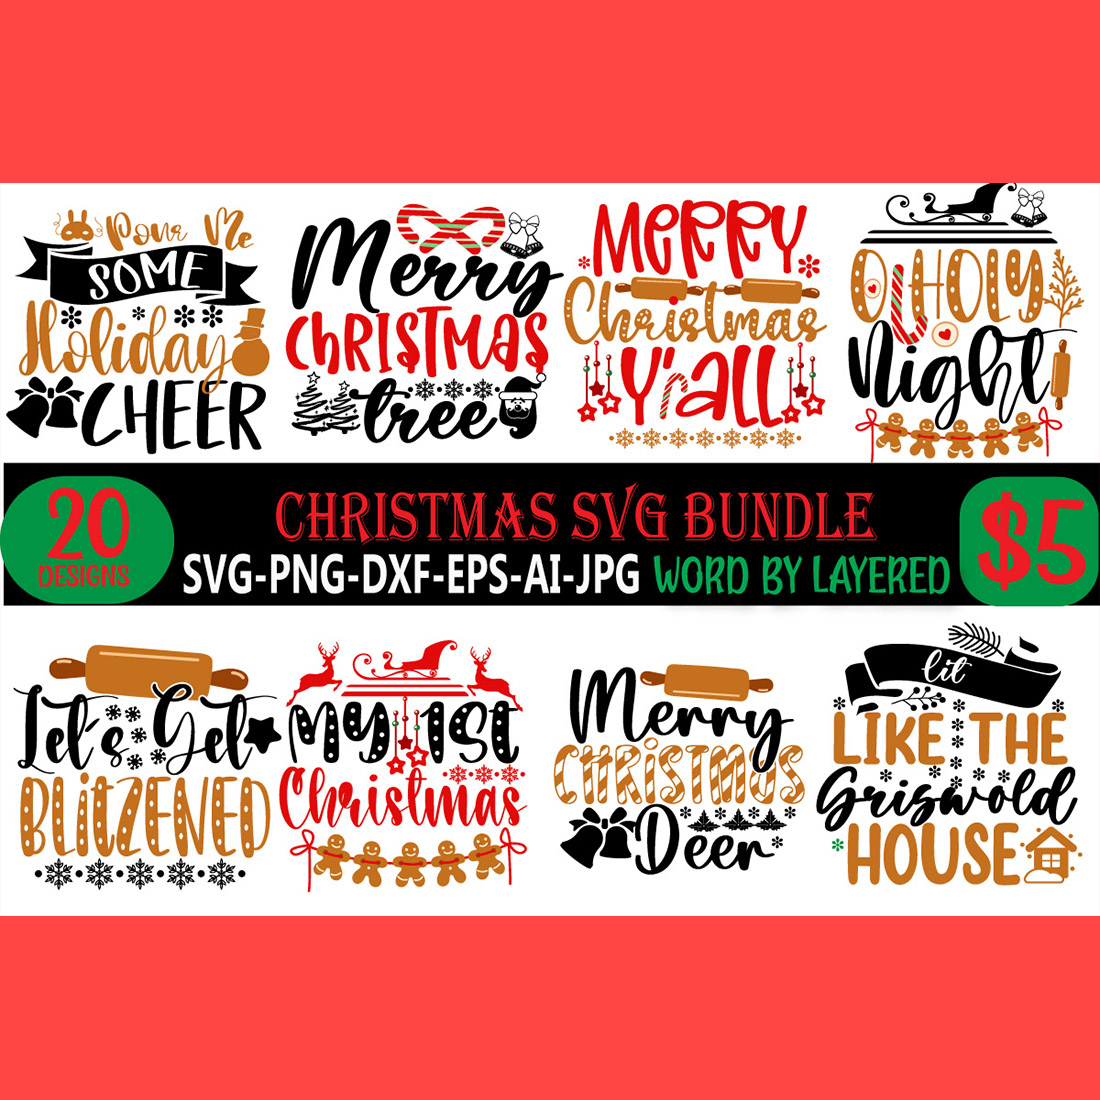 Christmas SVG Bundle main cover.